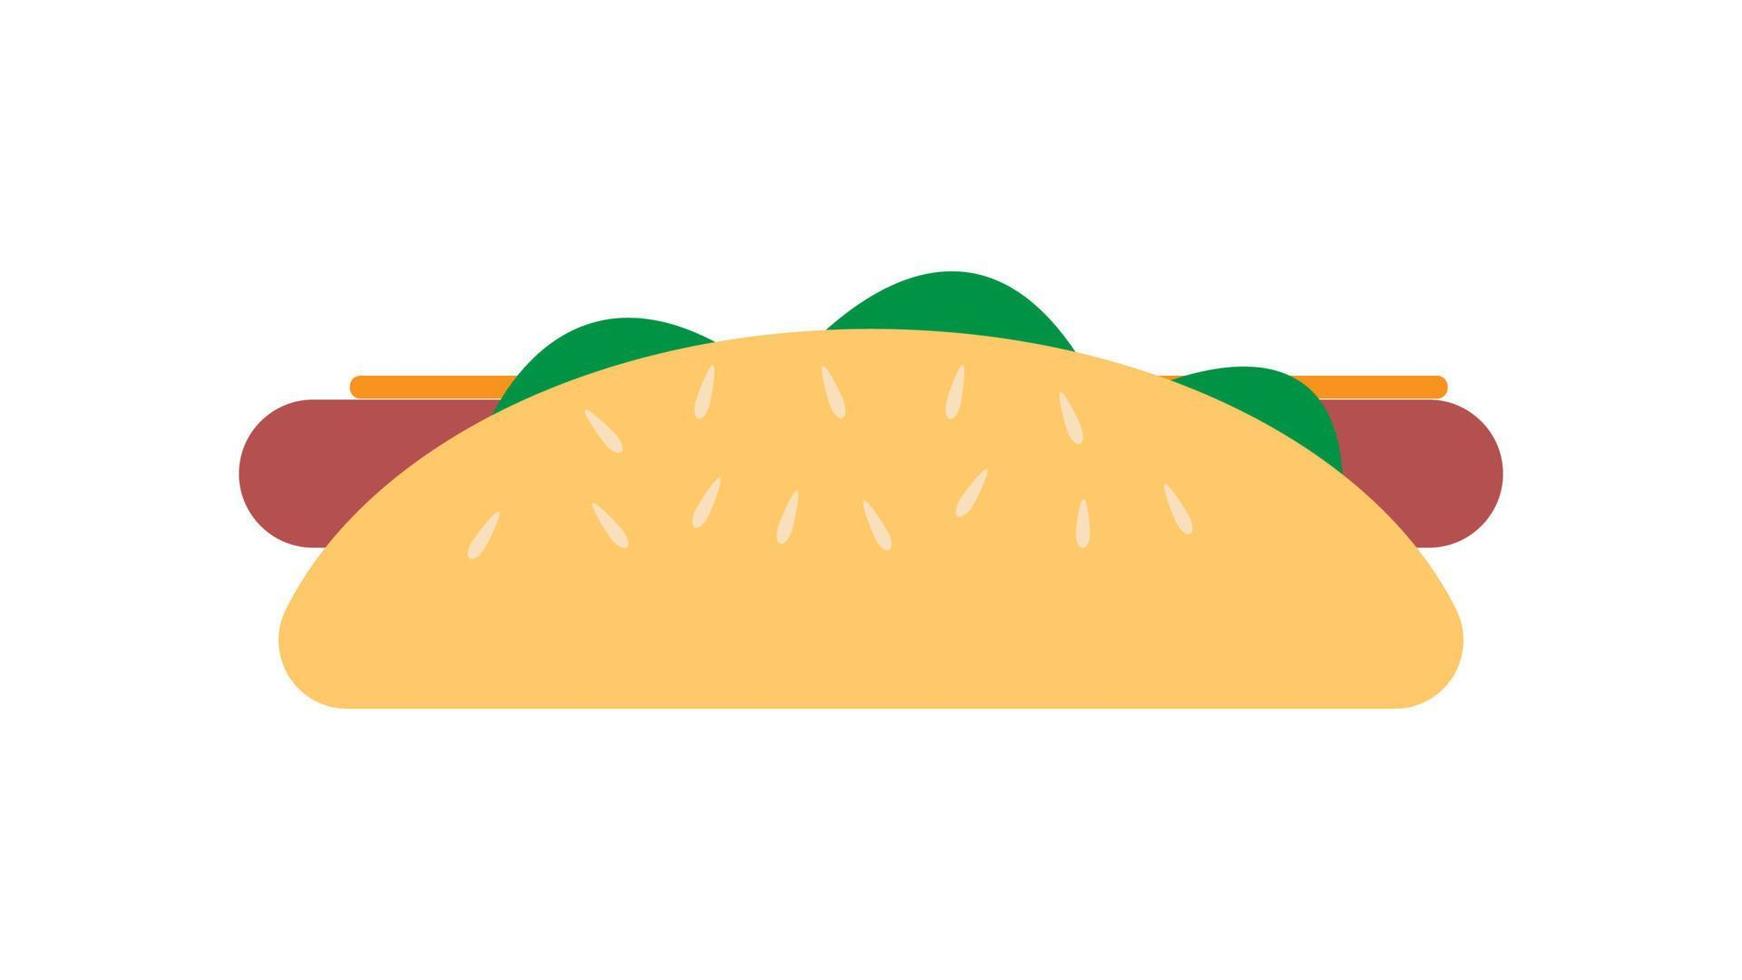 Sandwich mit Wurst auf weißem Hintergrund, Hotdog, Vektorillustration. Sandwich, herzhafter Snack, Fast Food. Brötchen mit Kräutern, Senf, Käse und Fleisch, Sesam obendrauf vektor